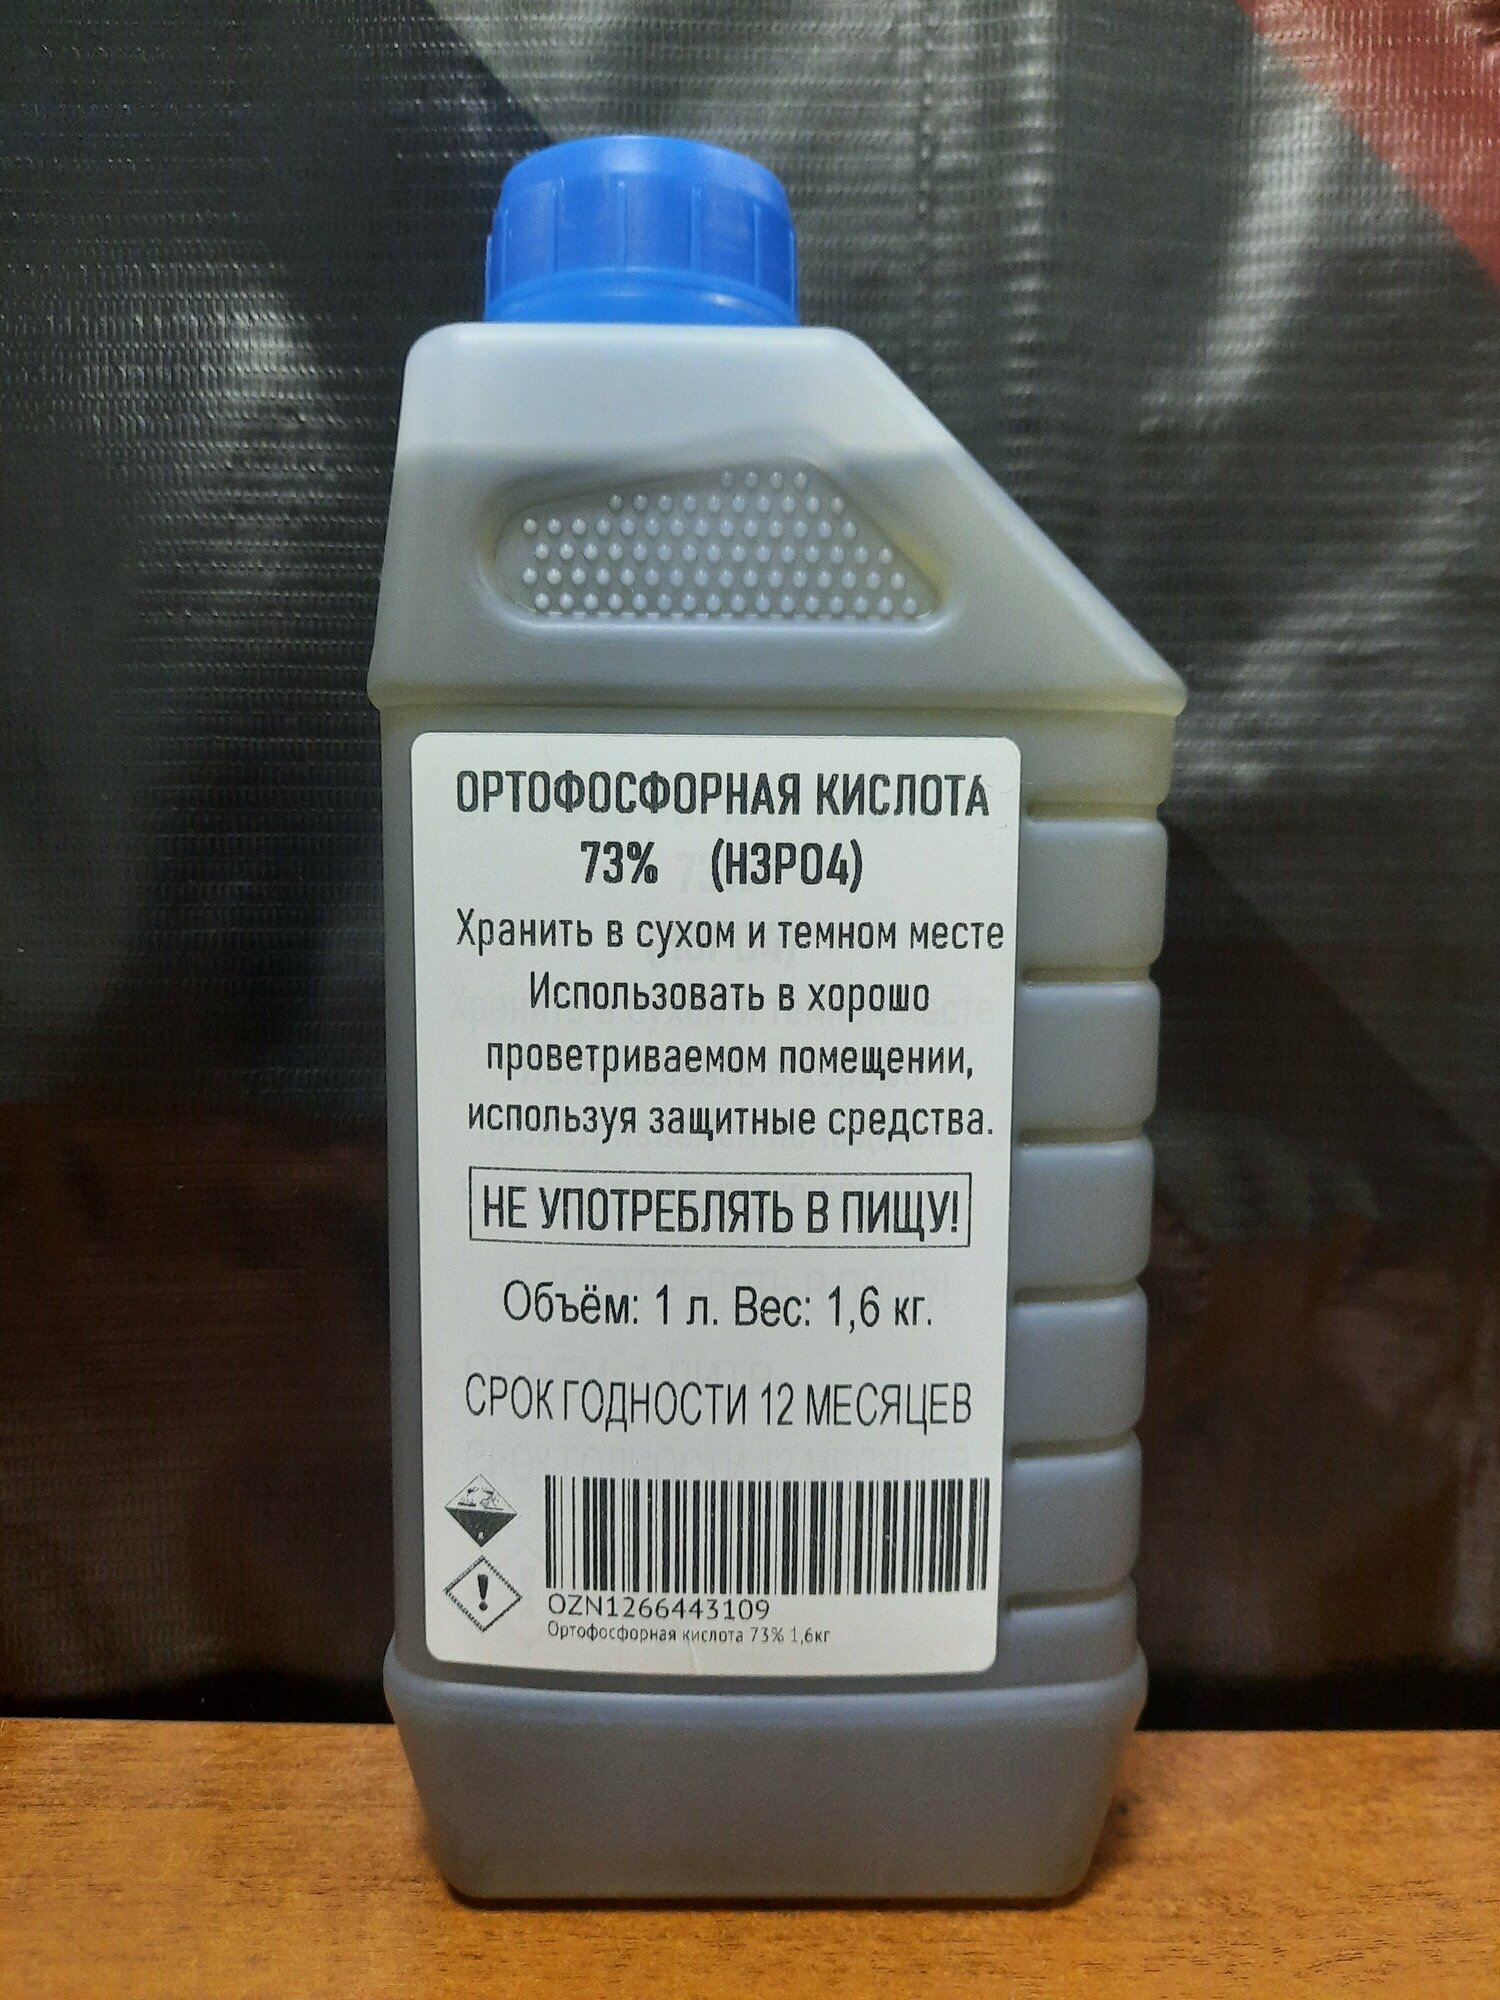 Ортофосфорная кислота 73% 1,6кг